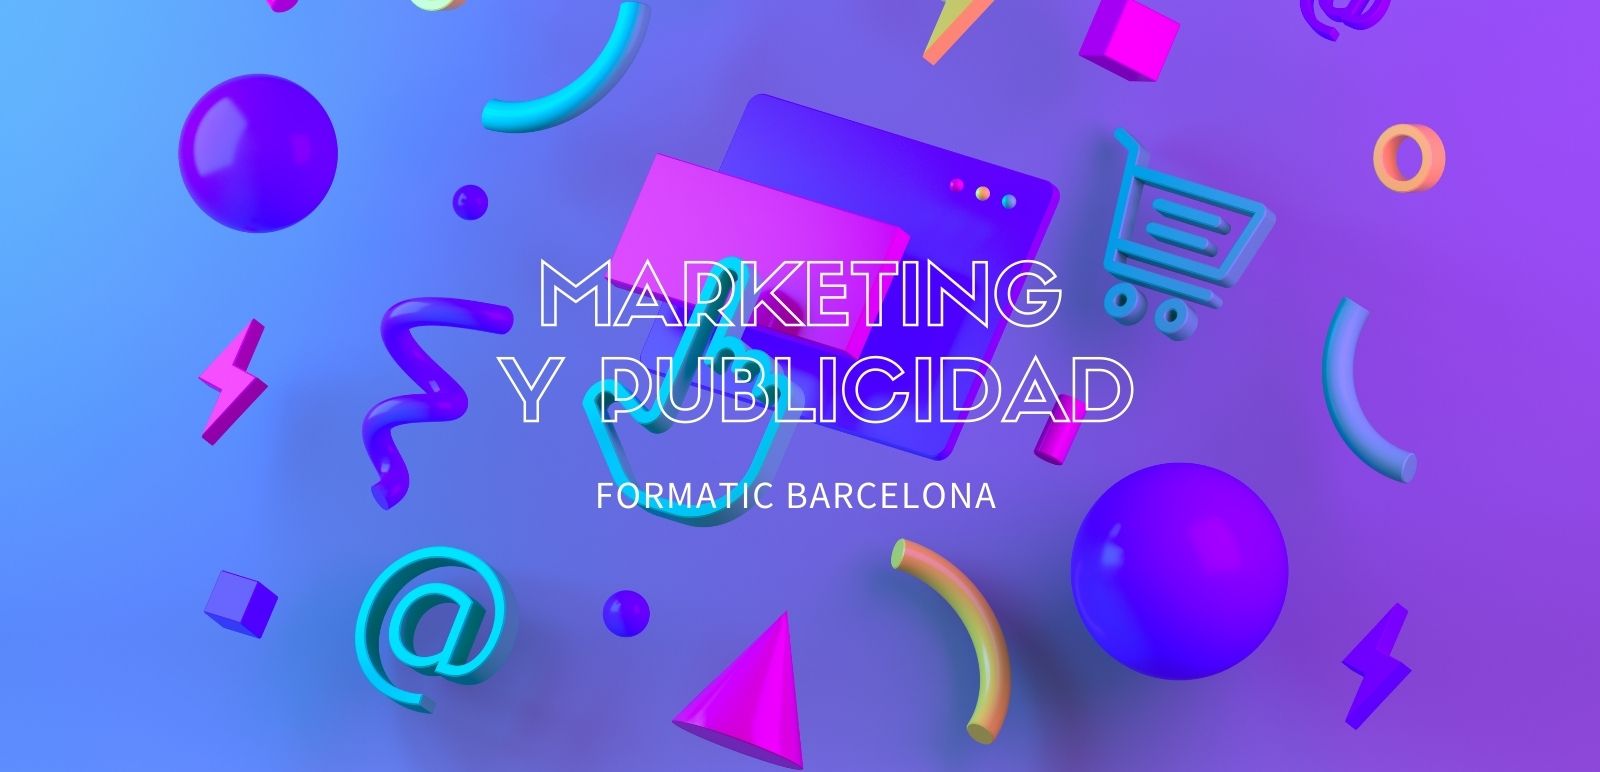 Marketing y publicidad, una profesión clave del siglo XXI | Escuela Universitaria Formatic Barcelona